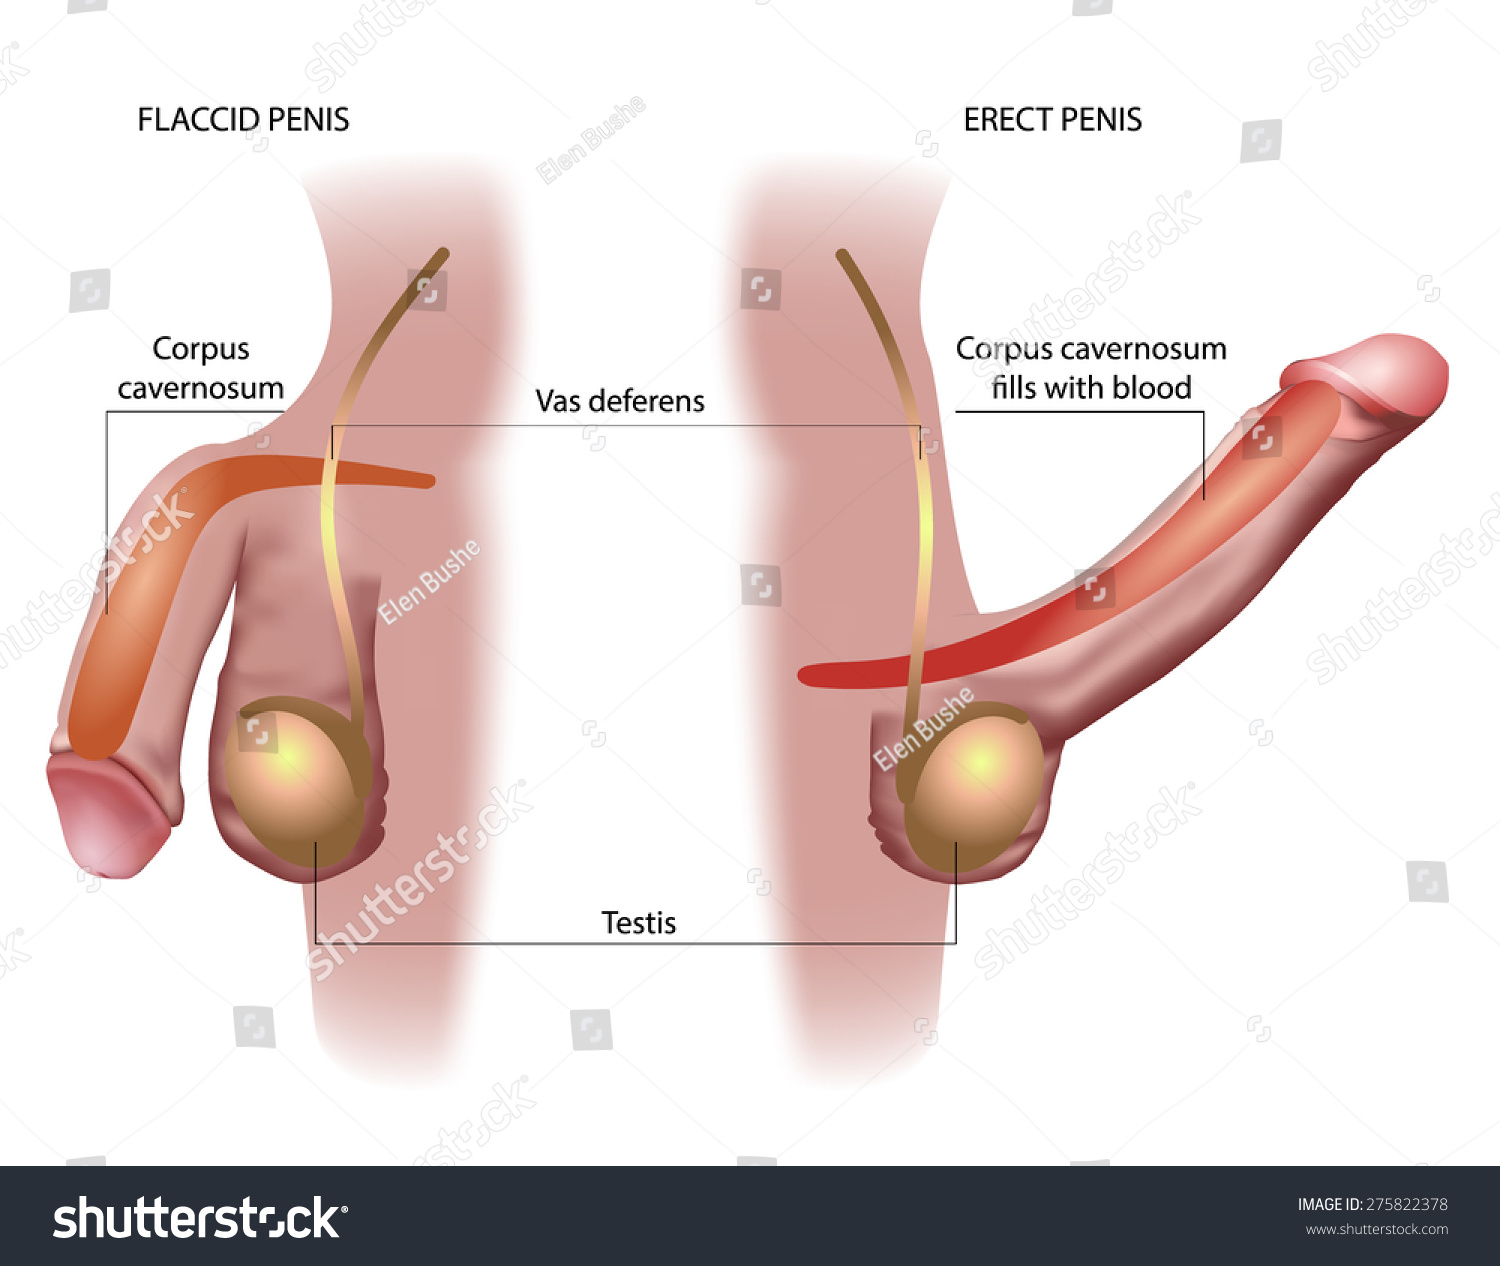 Erect Penis Ejaculation 46